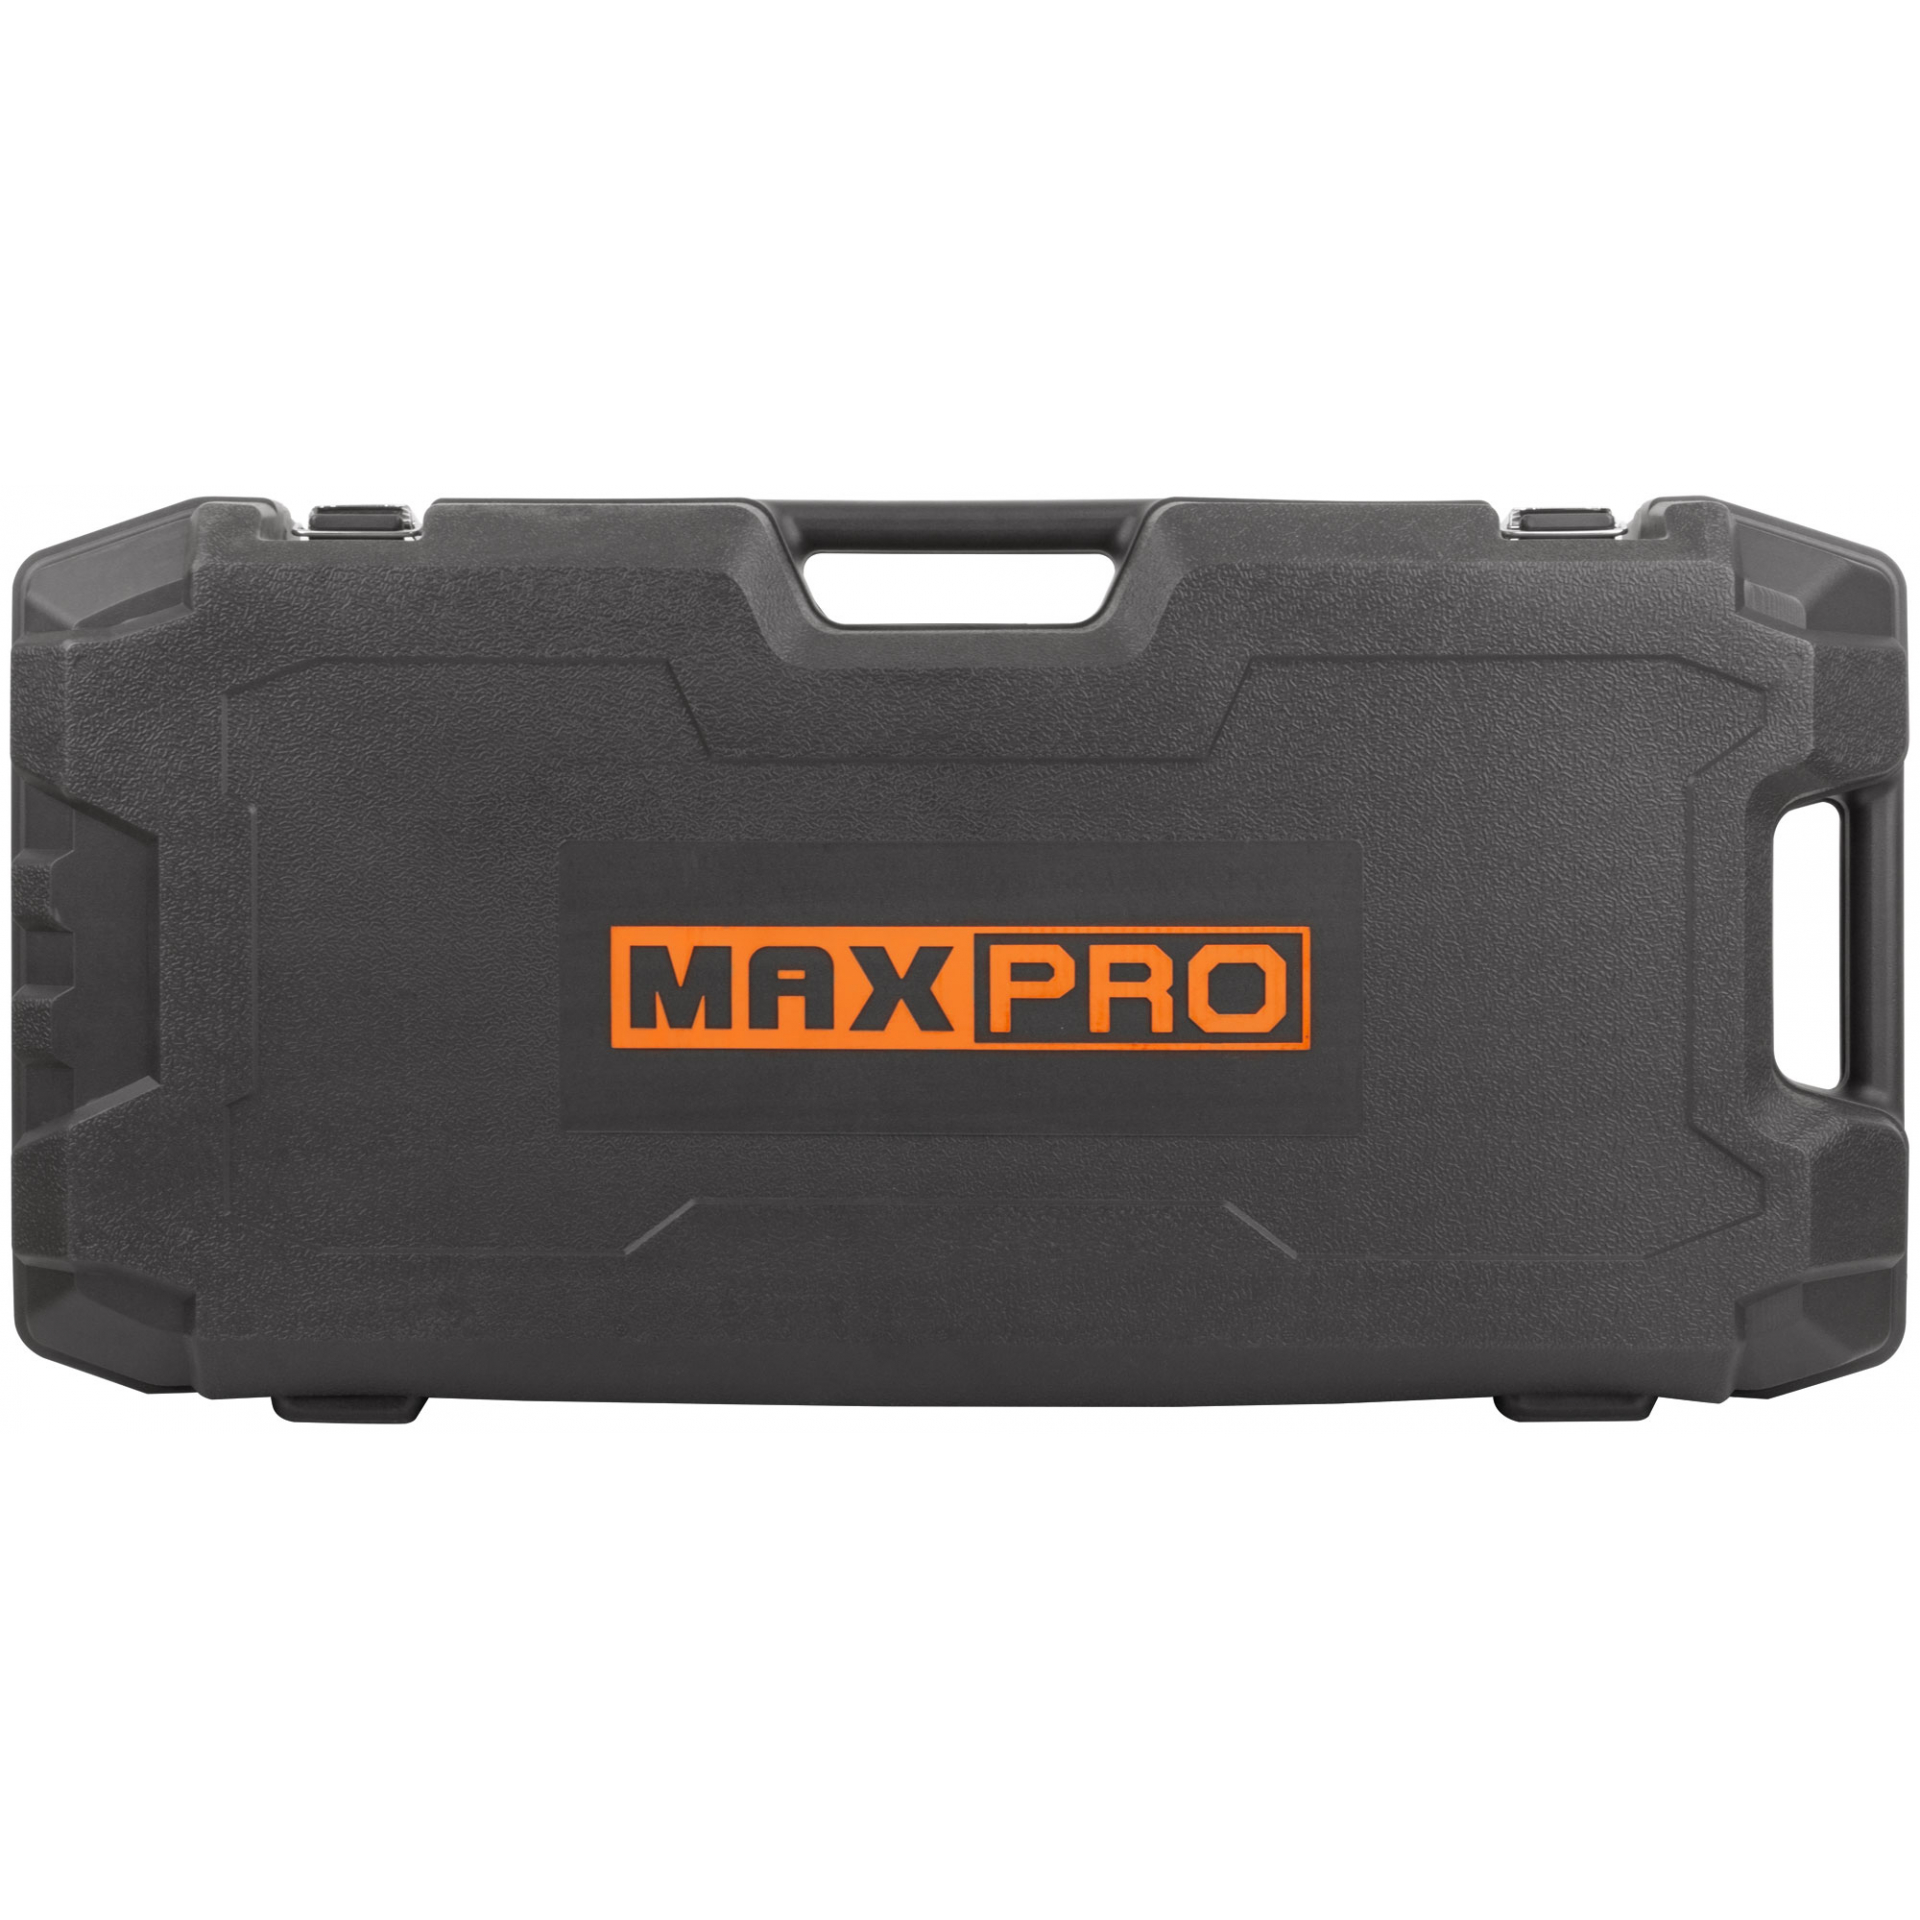 MAX-PRO Молоток отбойный электрический 1700 Вт; 1900уд/мин; 60 Дж; HEX 30mm; 14 кг; резиновый кабель; кейс